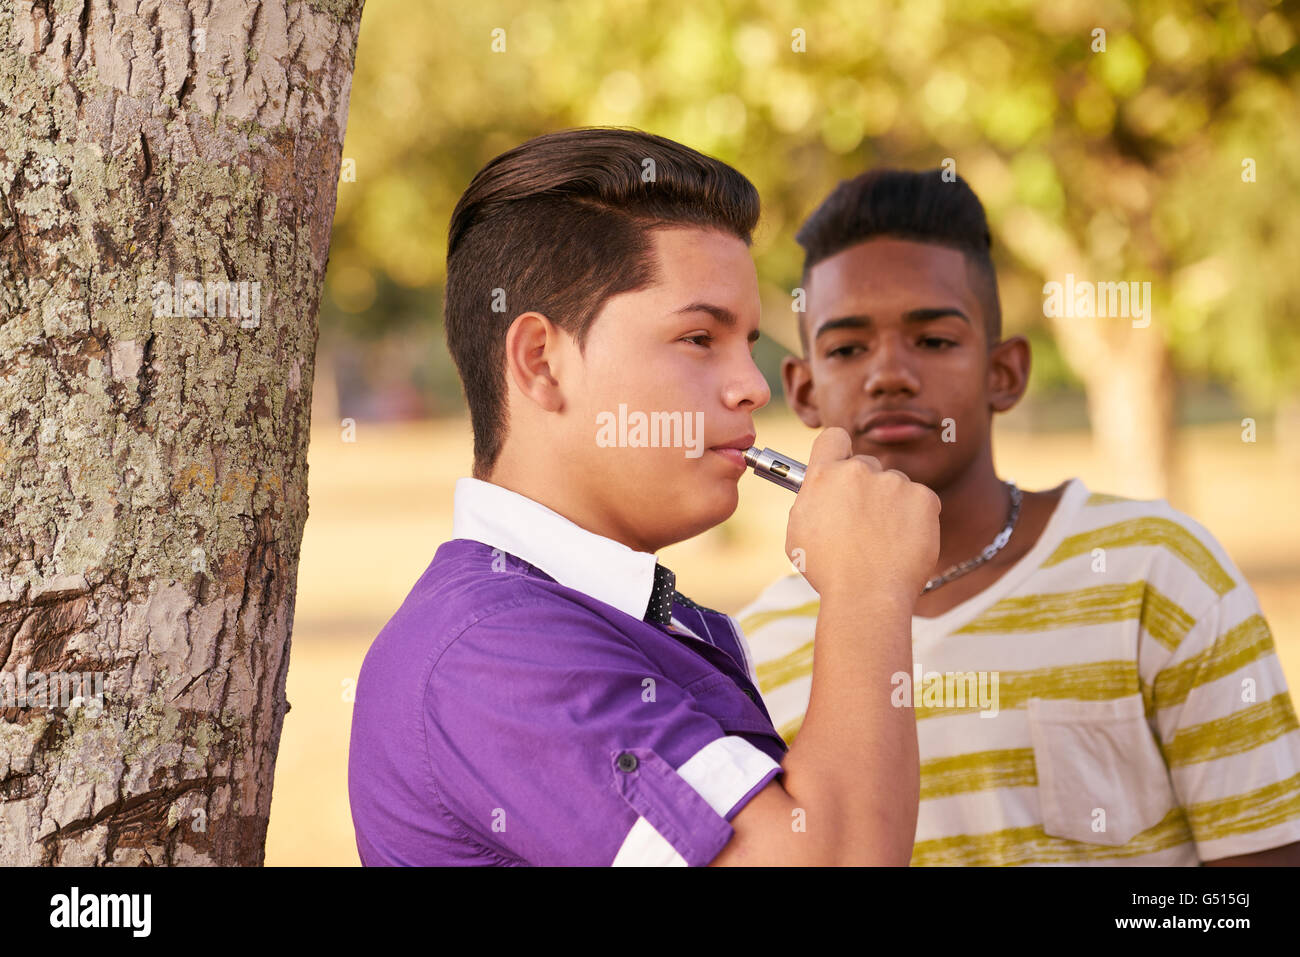 Kinder im Park rauchen elektronische Zigarette. Konzept der Raucher- und soziale Probleme mit Teenagern Stockfoto